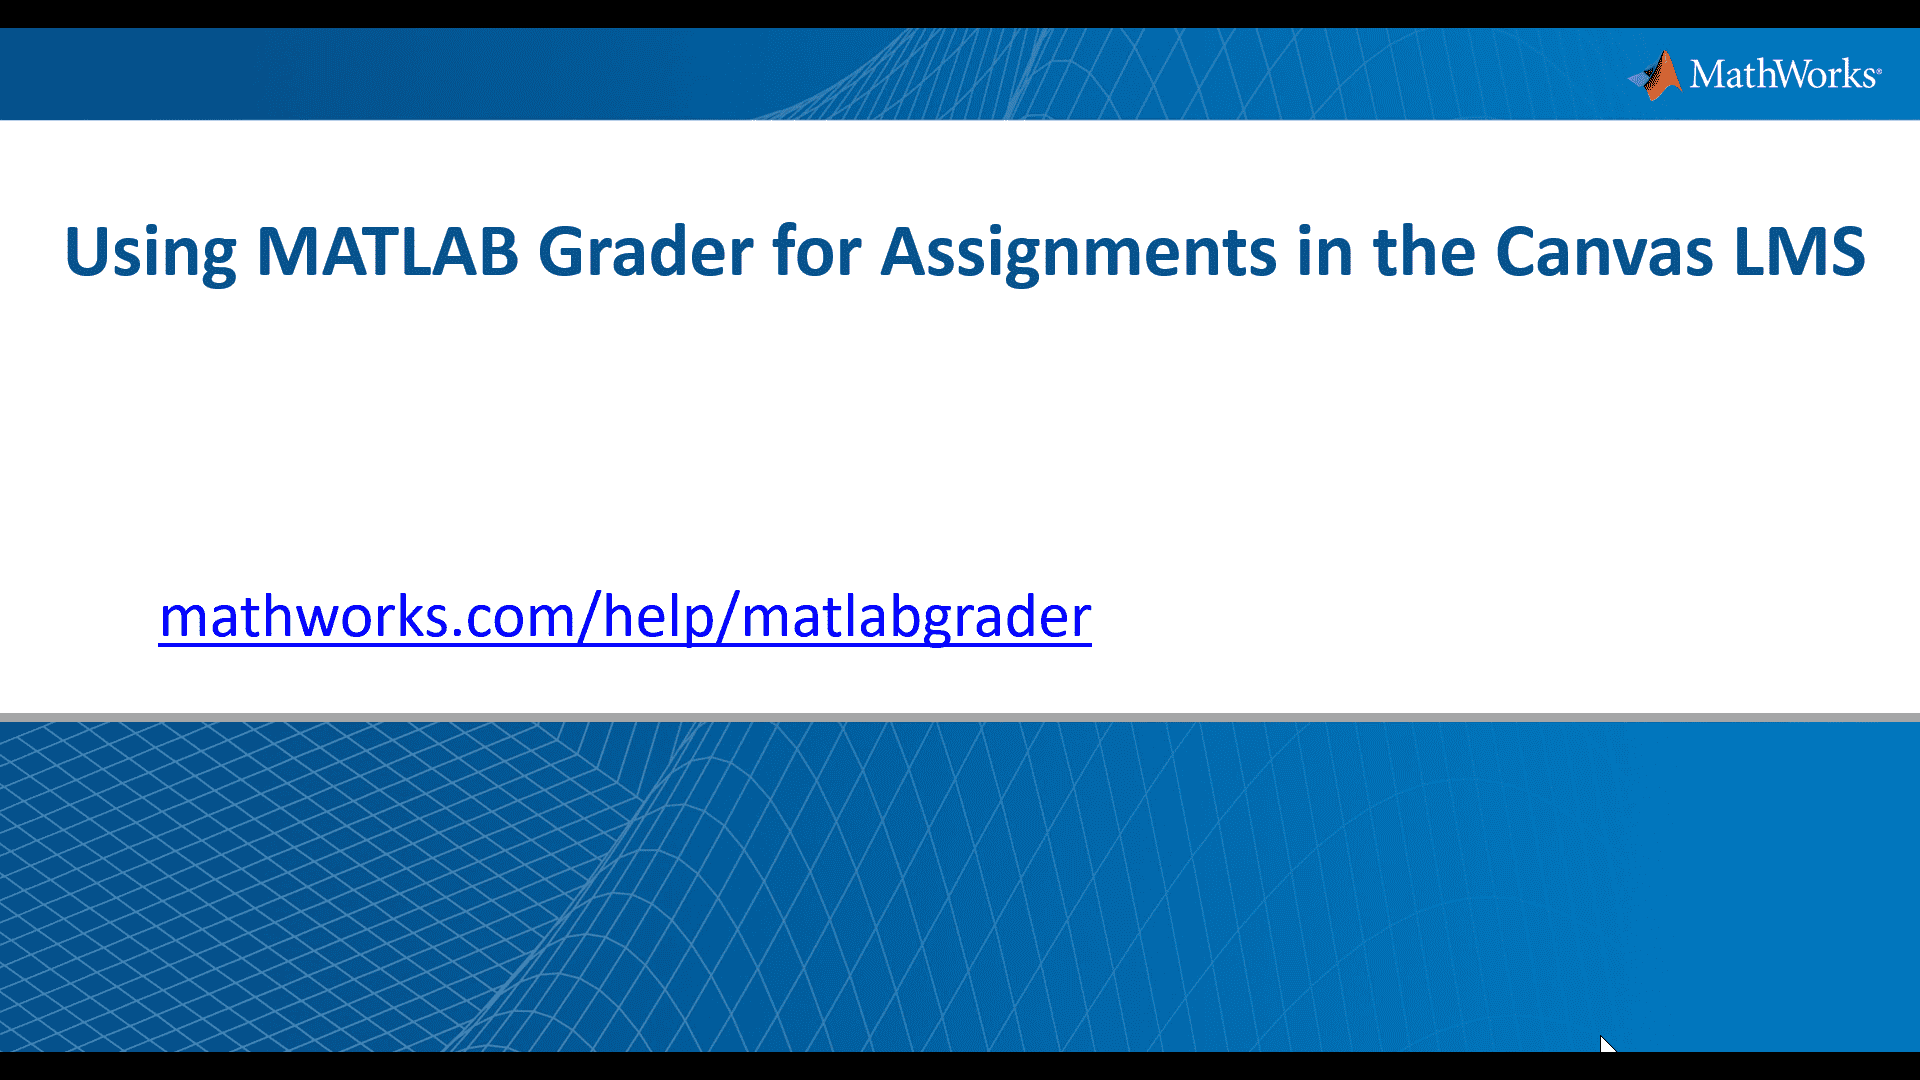 了解教师如何使用Matlab Grader将基于MATLAB的基于MATLAB的基于MATLAB的分配添加到他们的Canvas学习管理系统。